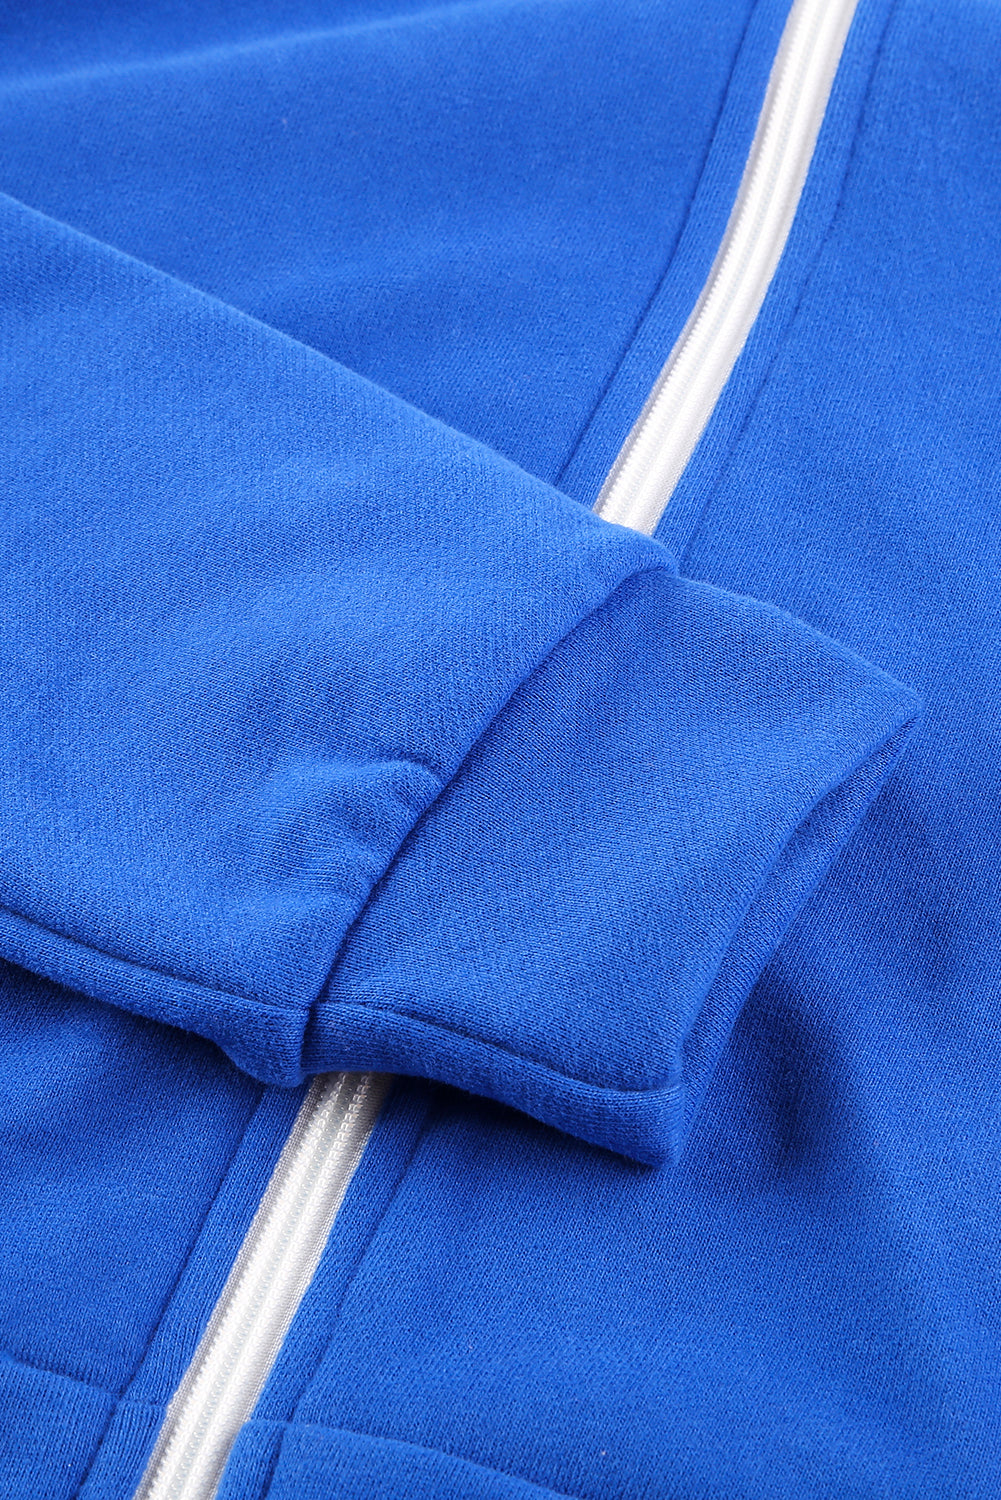 Plava jakna s kapuljačom na patentni zatvarač